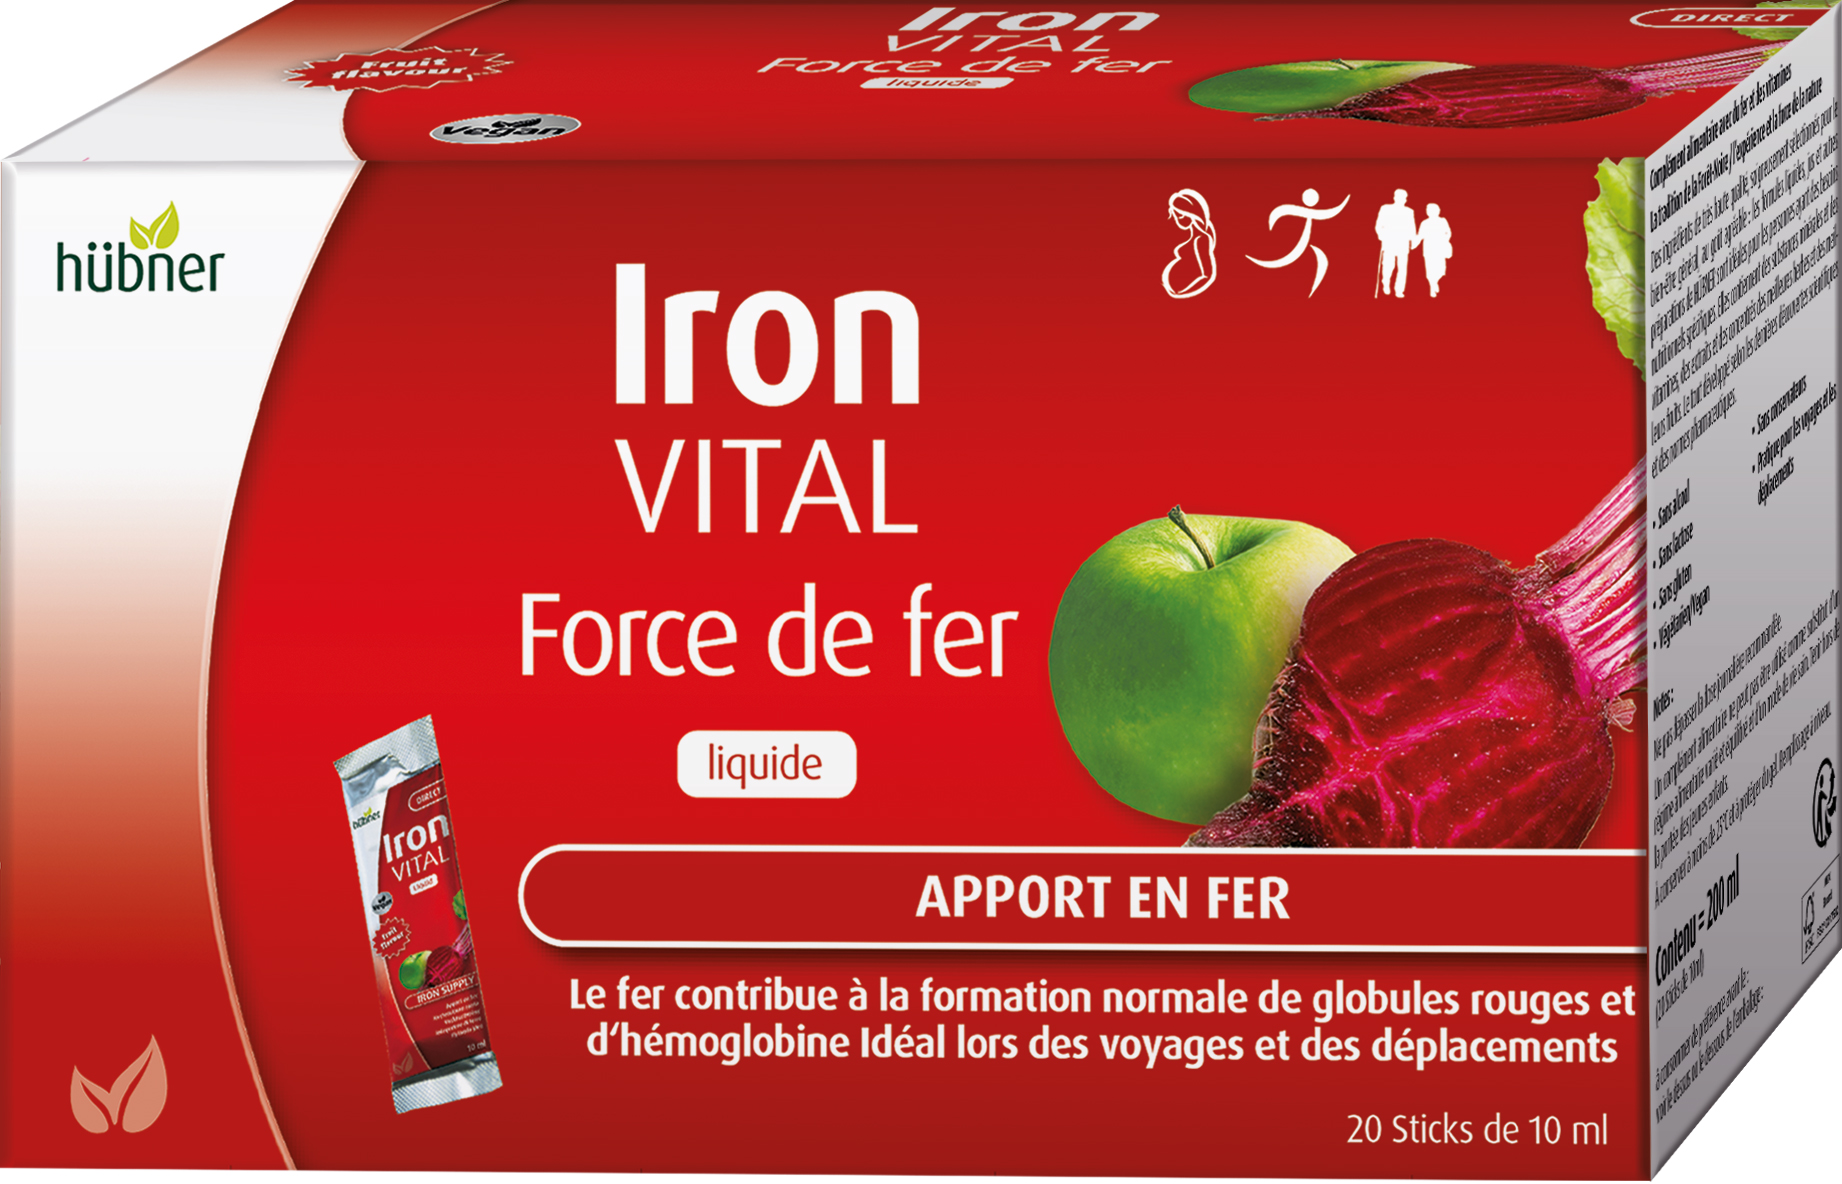 Iron Vital - Force de fer Liquide (sachet) - Photo 1